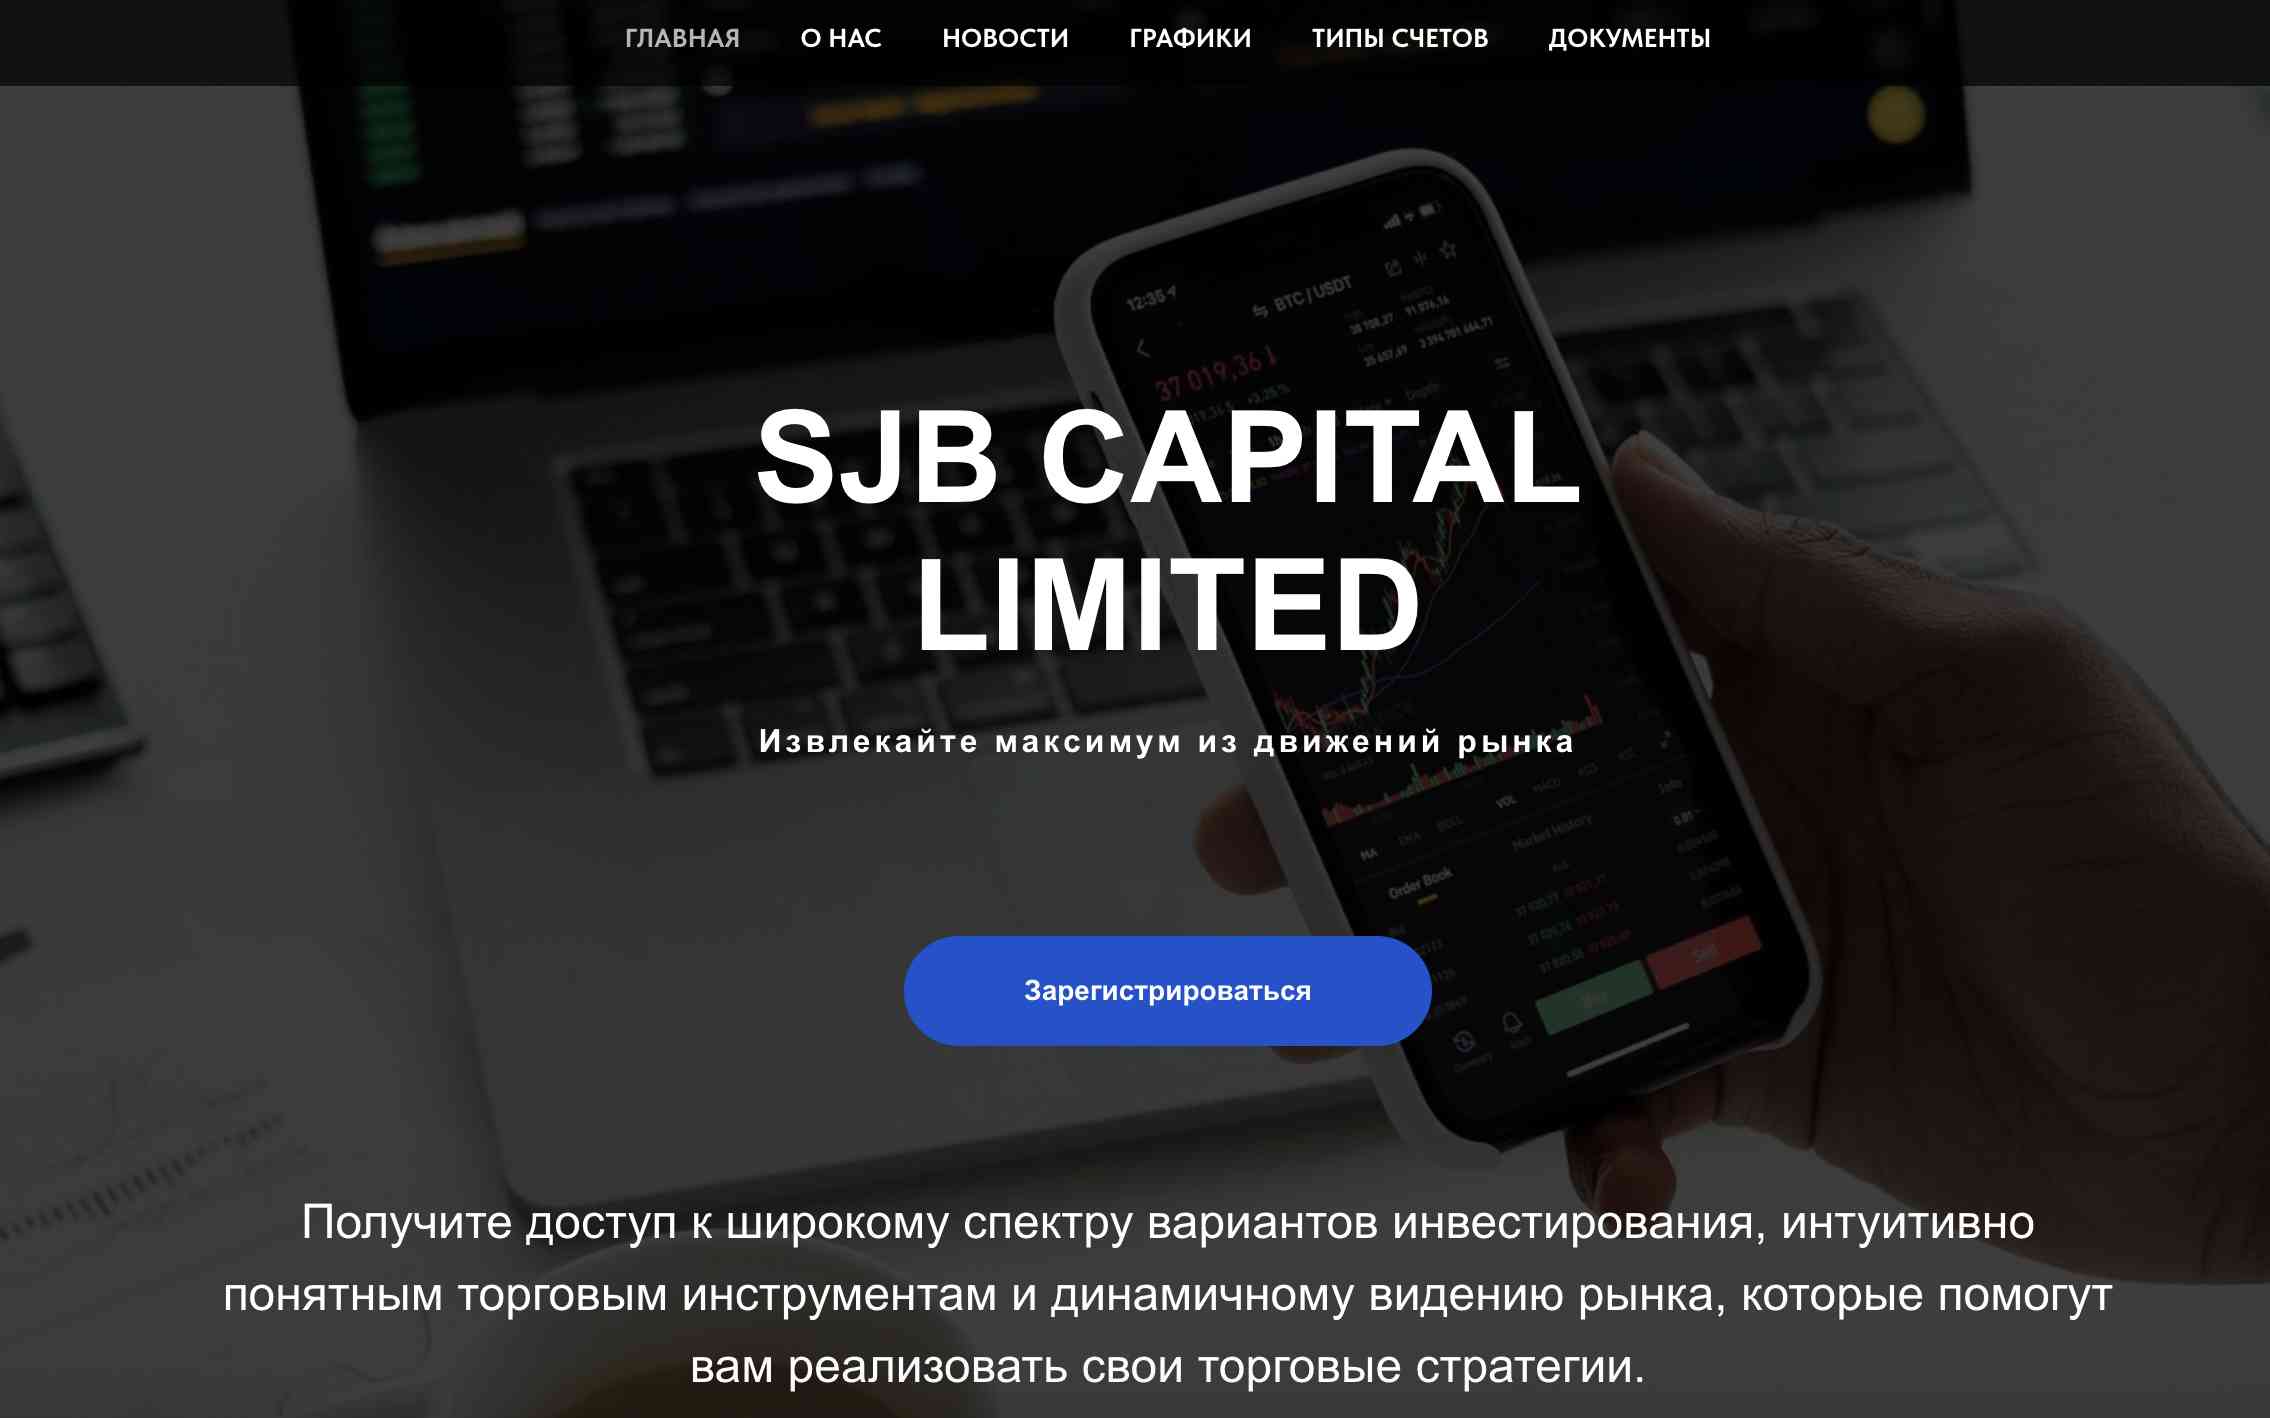 SJB Capital